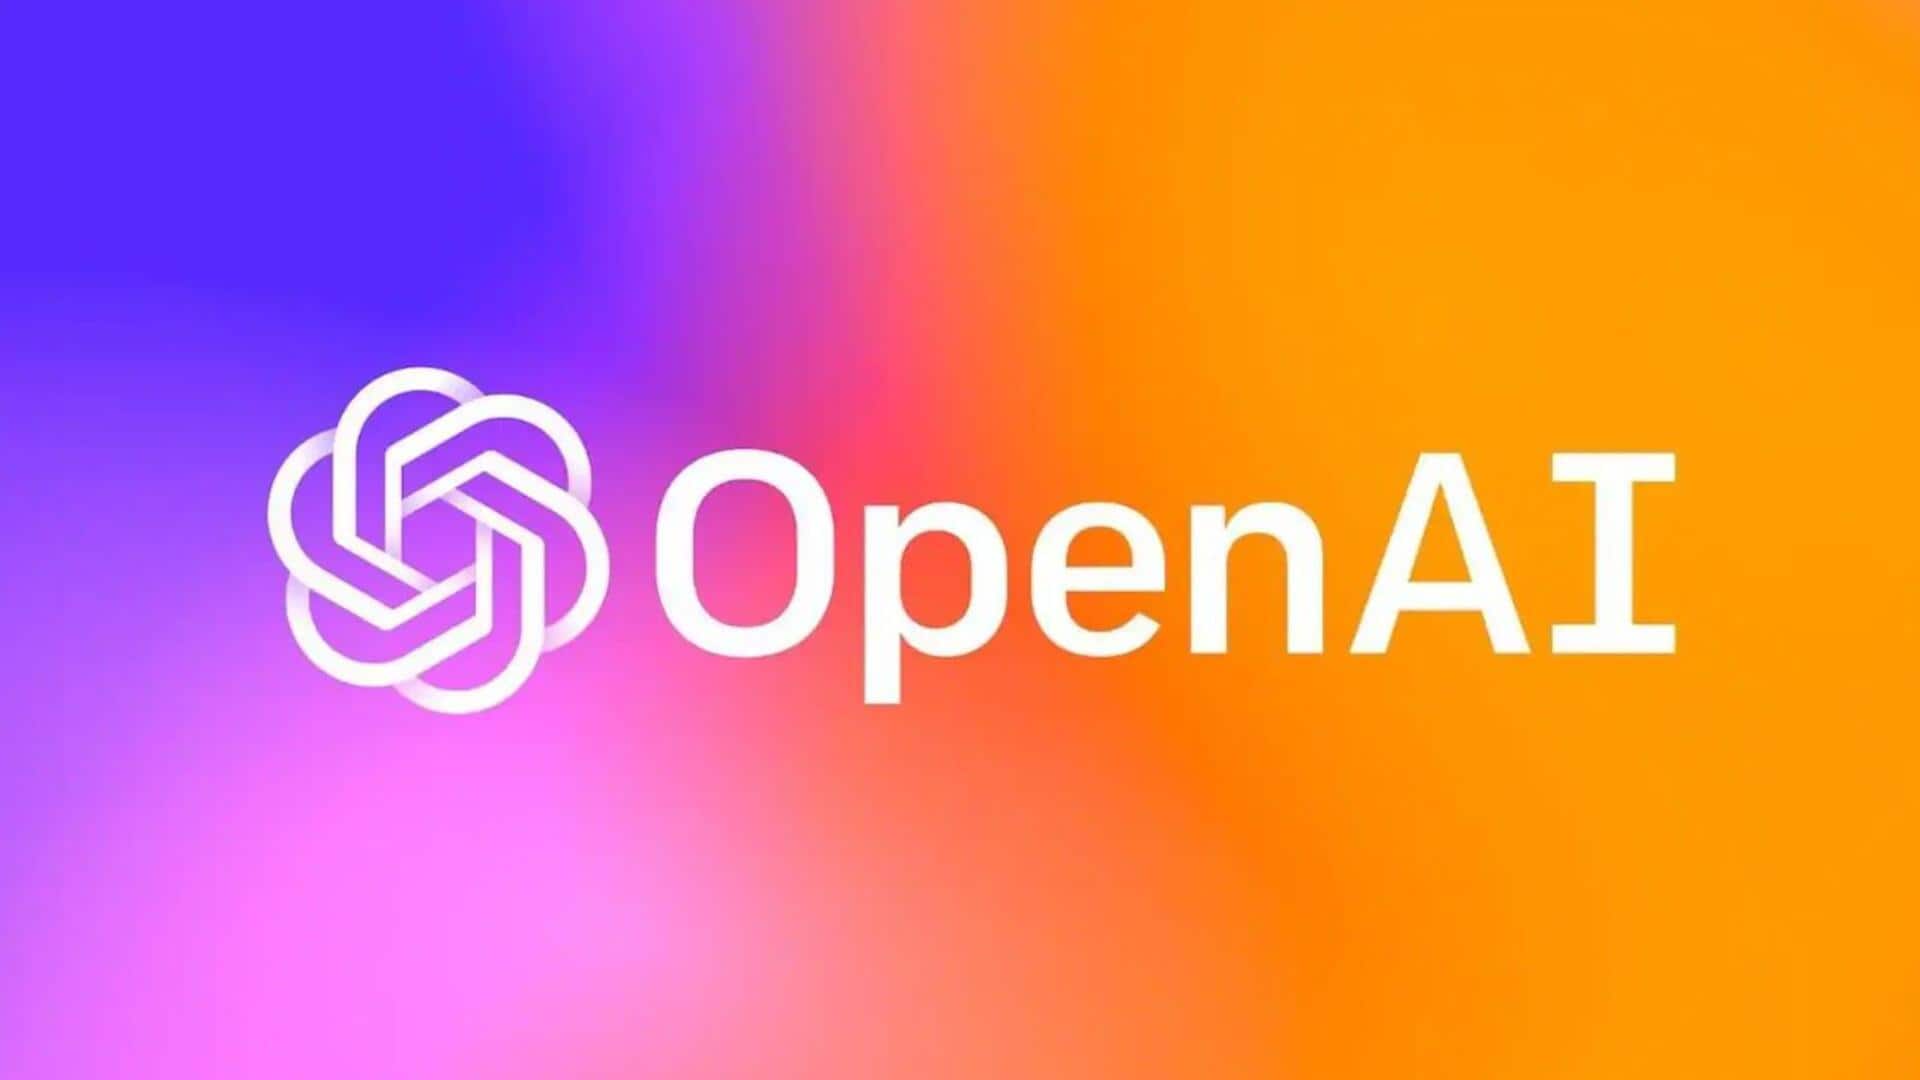 OpenAI द्वारा लॉन्च किया गया क्रिटिकGPT AI टूल क्या काम करेगा?